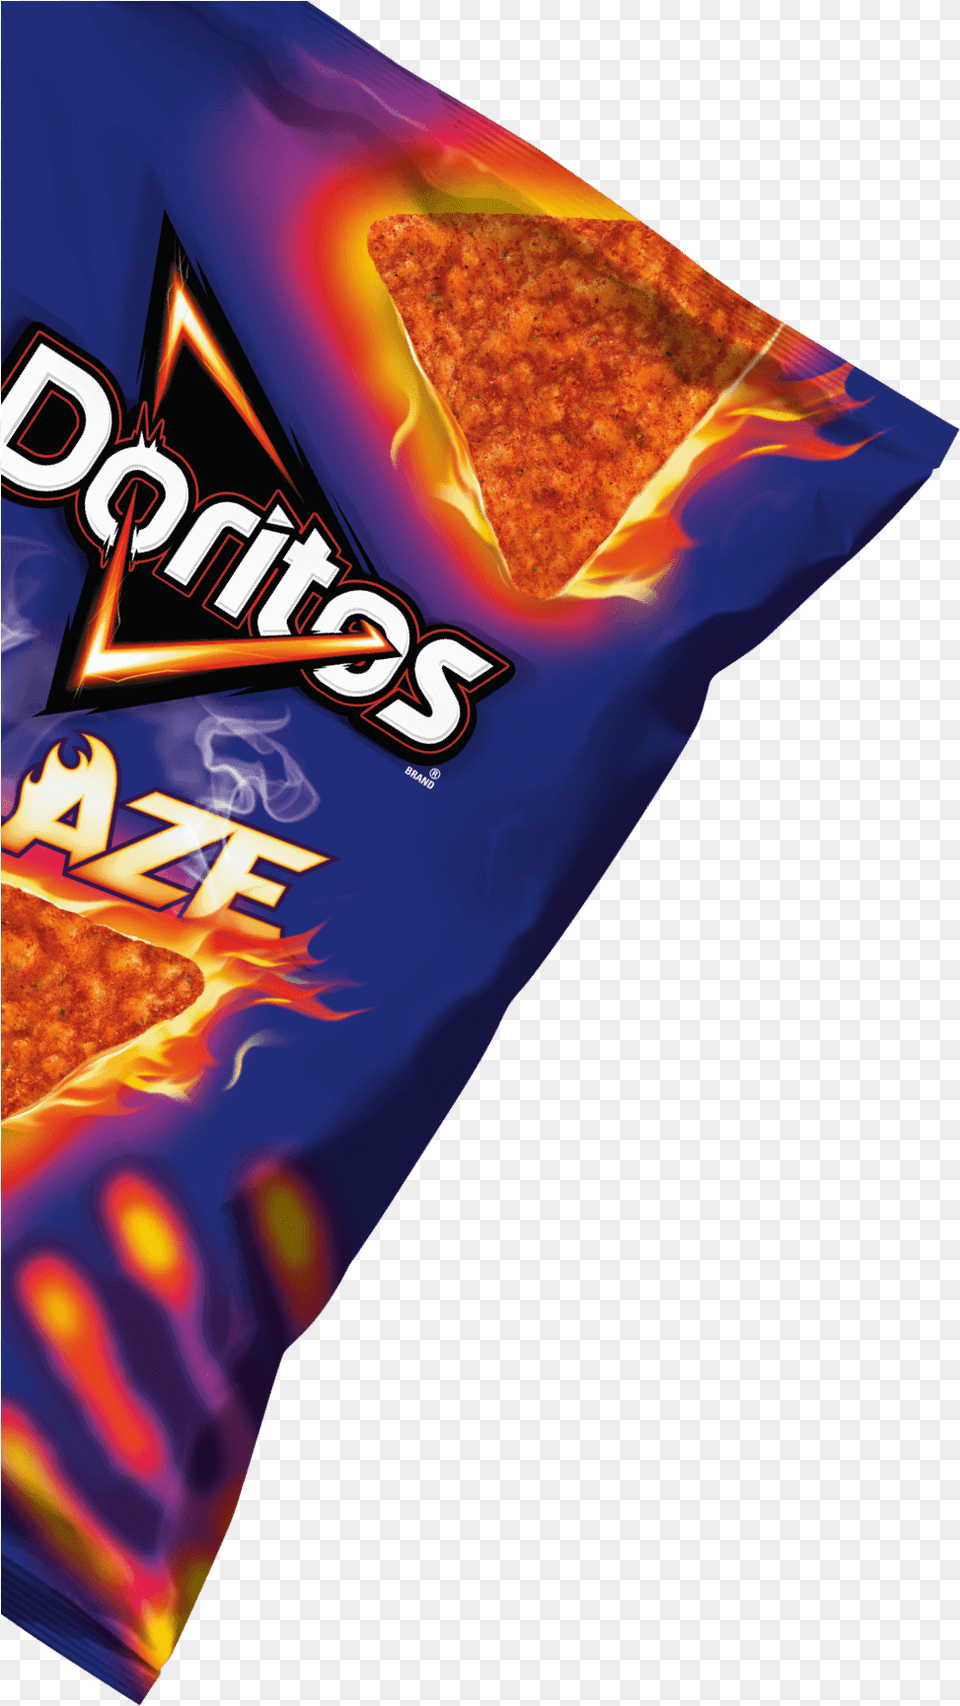 Download Doritos Logo Jpg Royalty Doritos, Food, Snack, Sweets, Bread Png Image